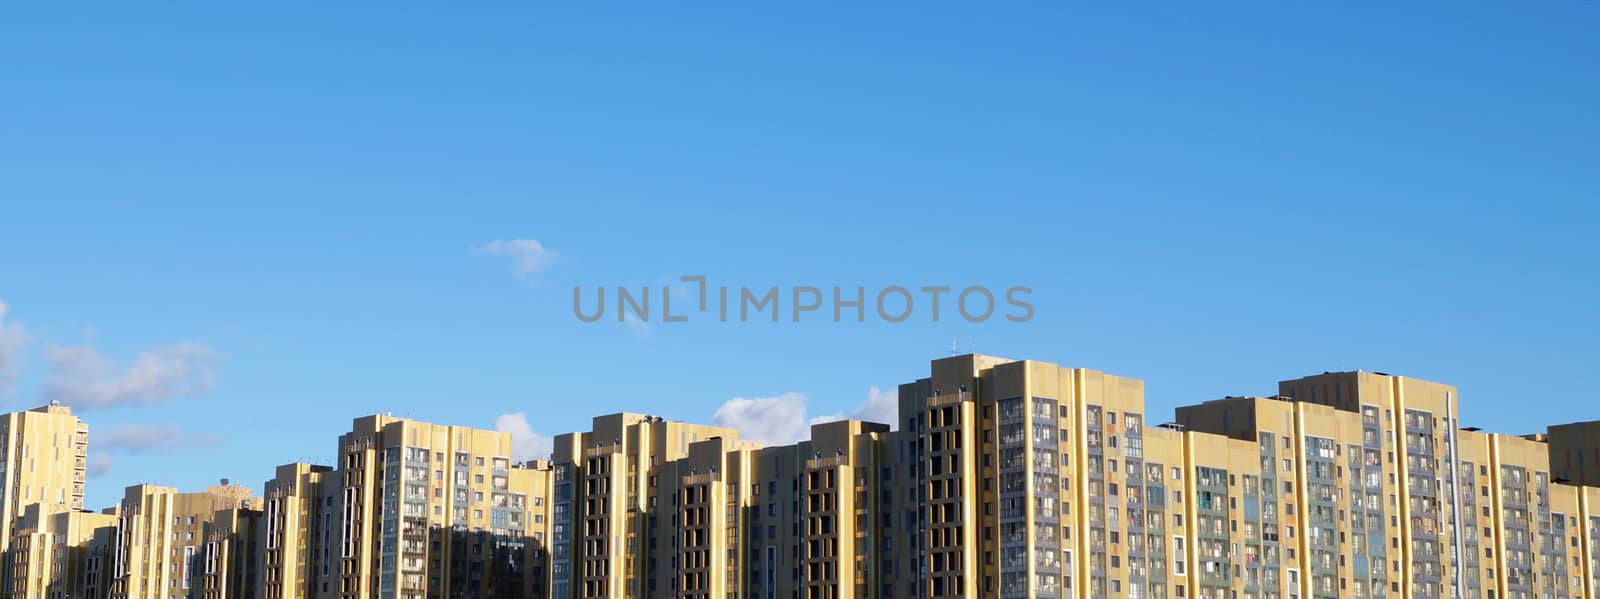 city skyline against a clear blue sky. by Annado